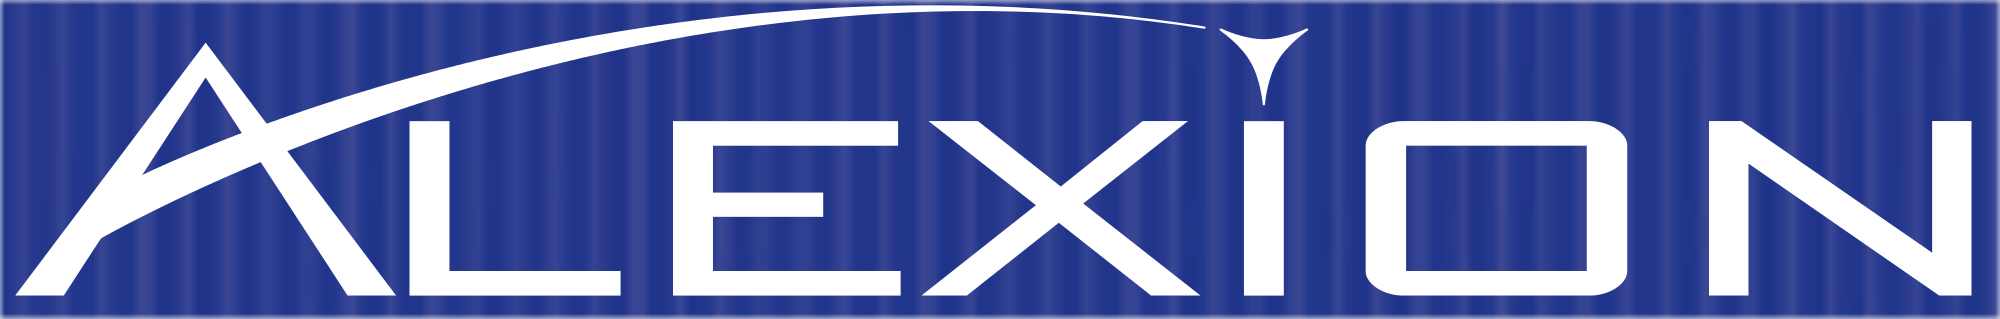 Alexion Logo - File:Alexion Pharmaceuticals Logo.svg - Wikimedia Commons